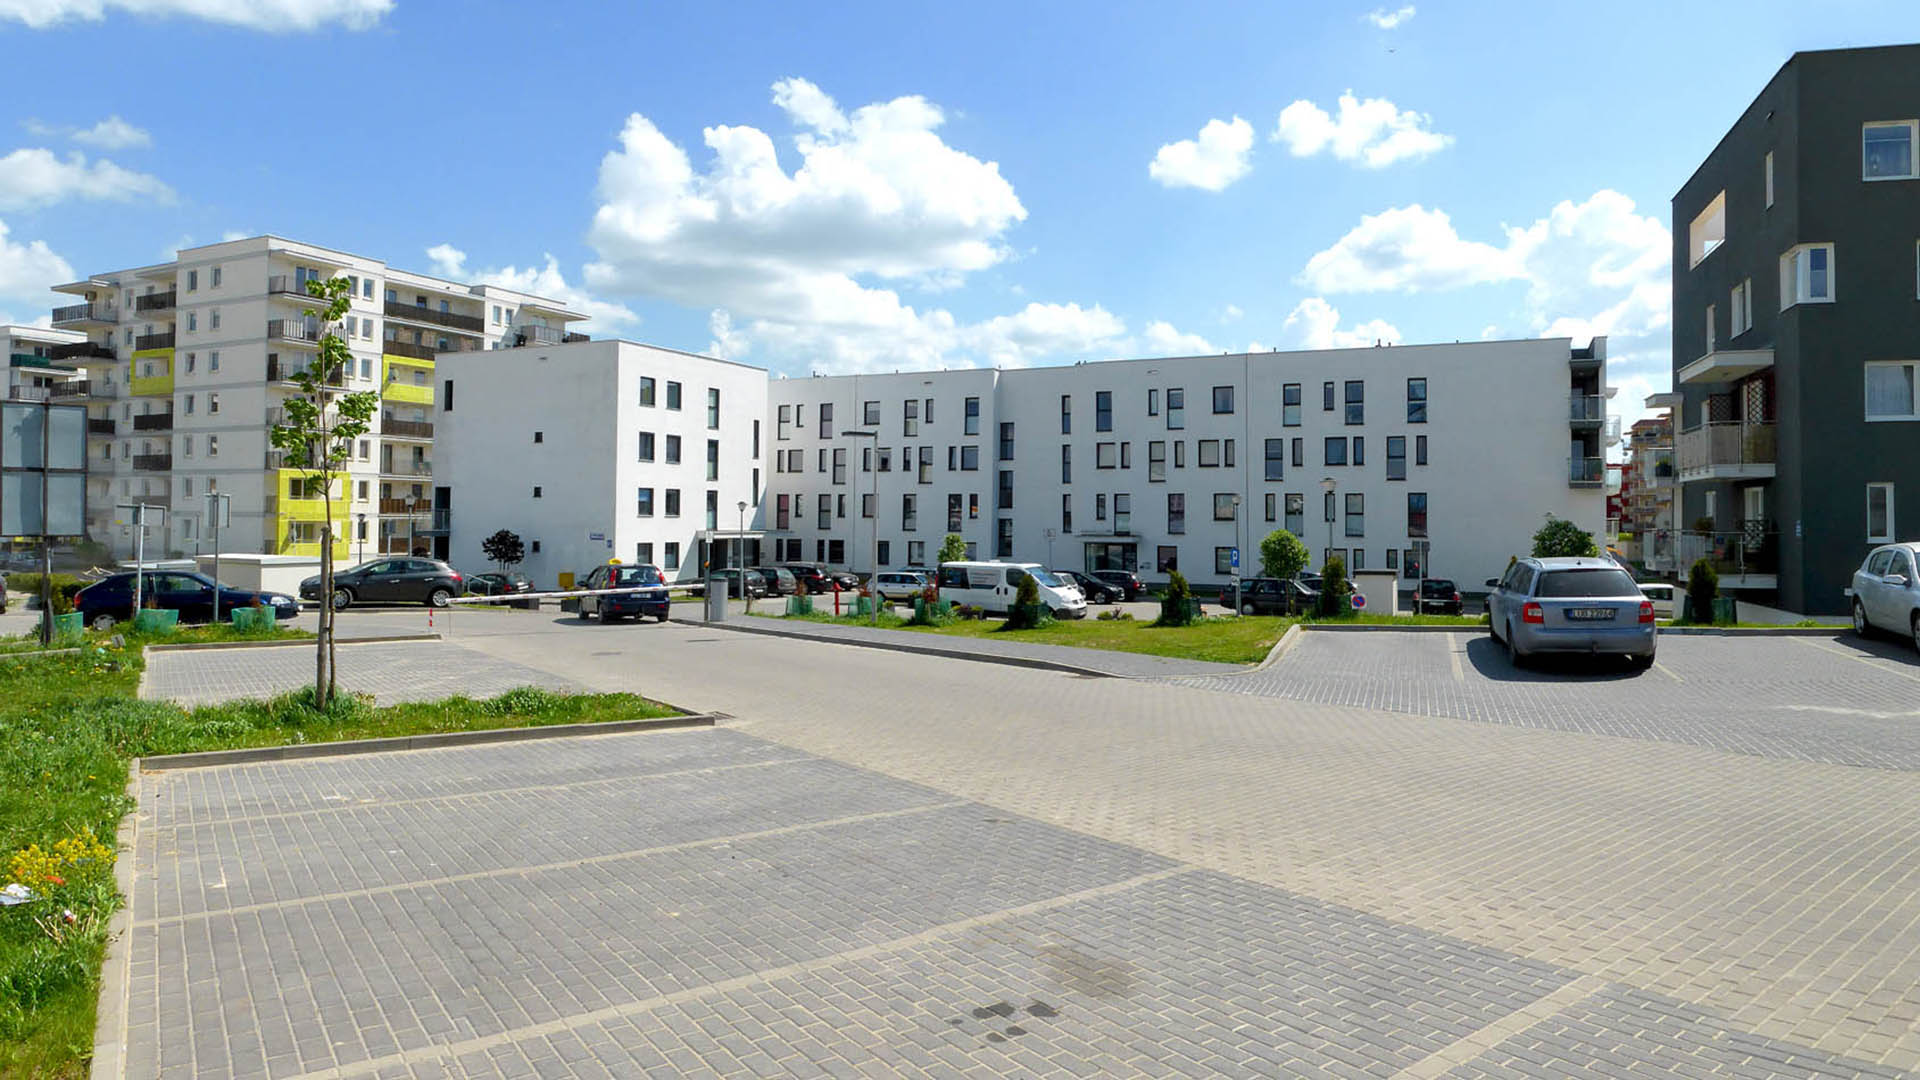 Nowe mieszkania na sprzedaż w Lublinie. Inwestycja mieszkaniowa dewelopera Willowa 2 przy Relaksowej.